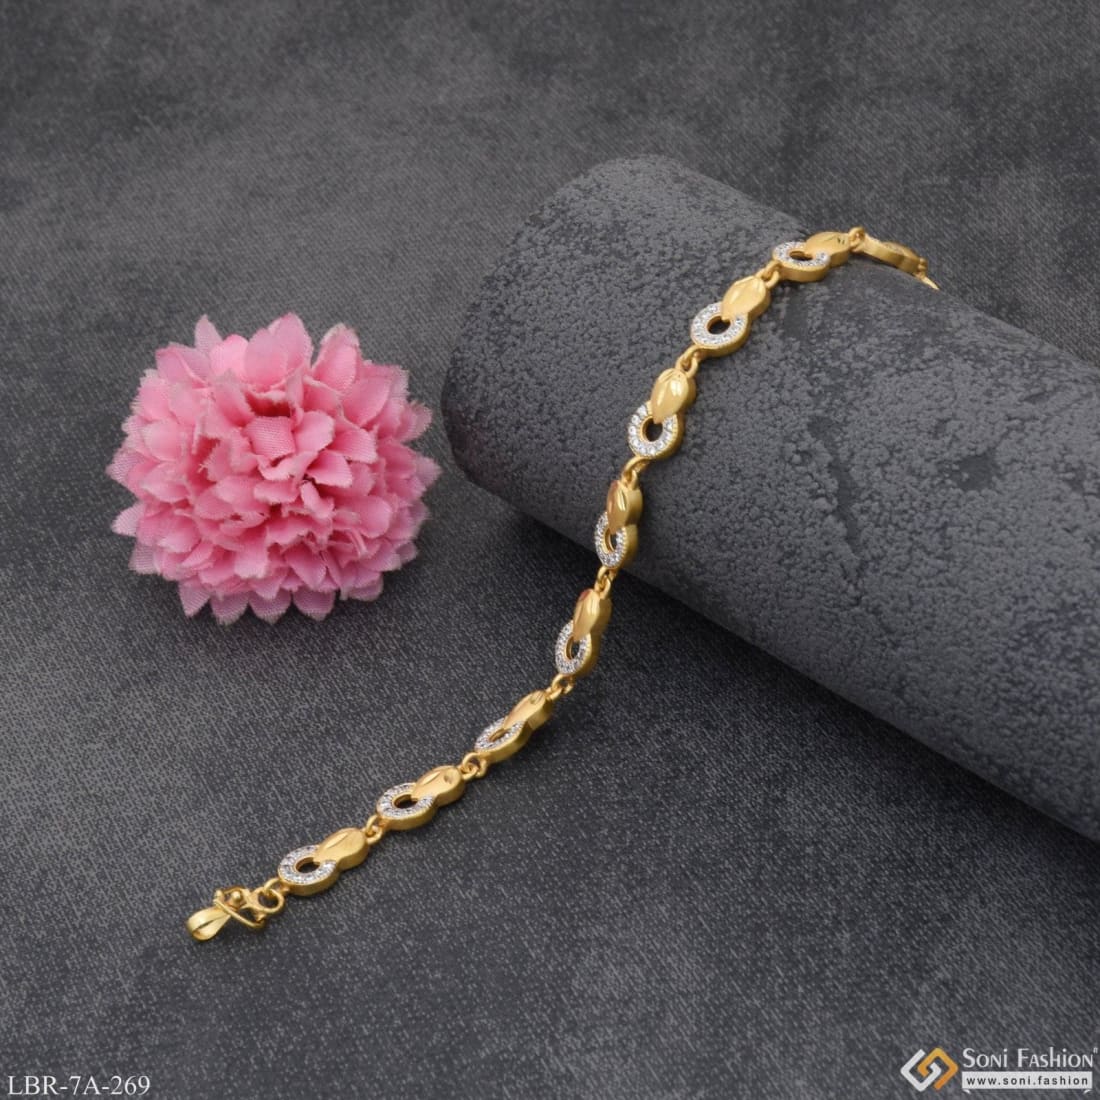 18k Gold Bracelets - Italian fine jewellery – Nanis Italian Jewels